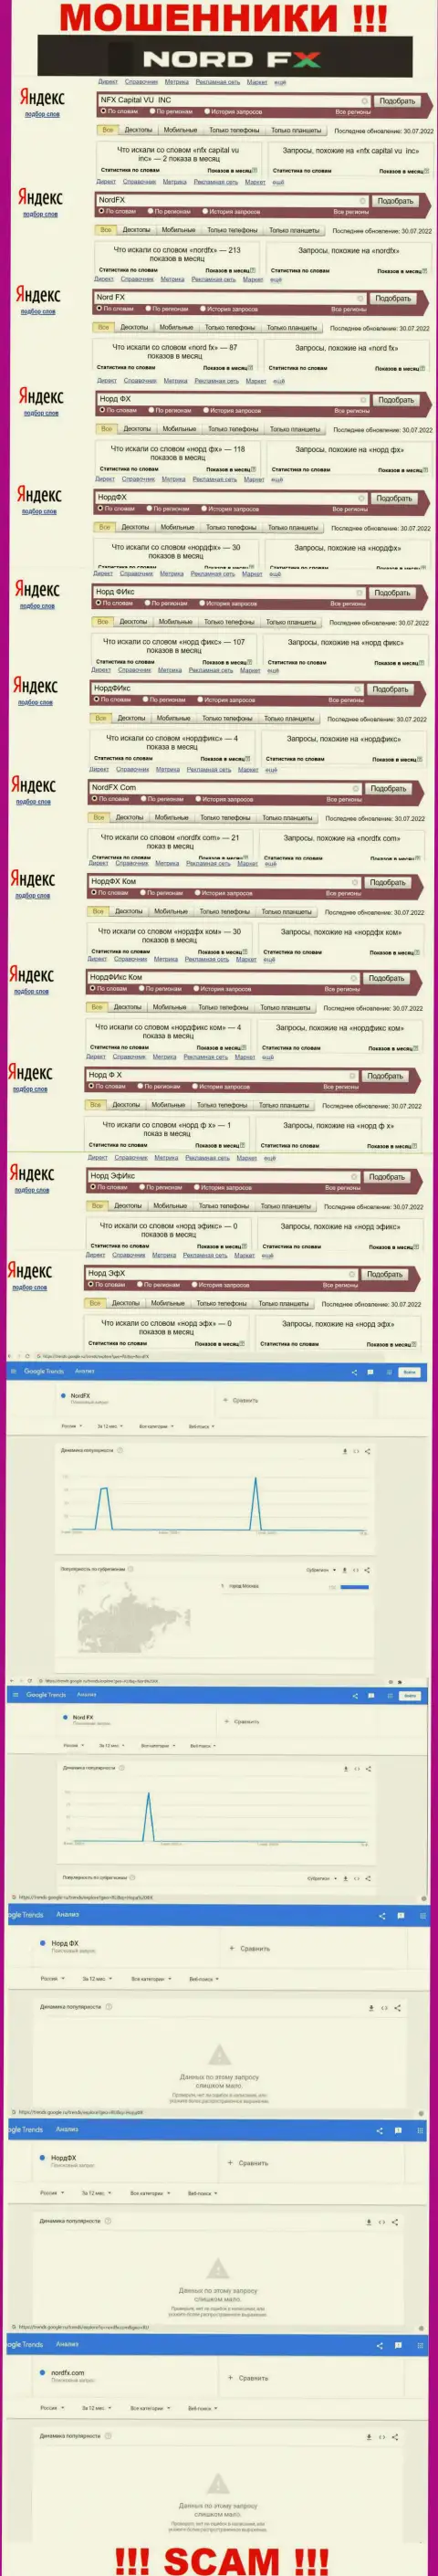 Количество online запросов в поисковиках всемирной интернет сети по бренду шулеров Норд ФХ